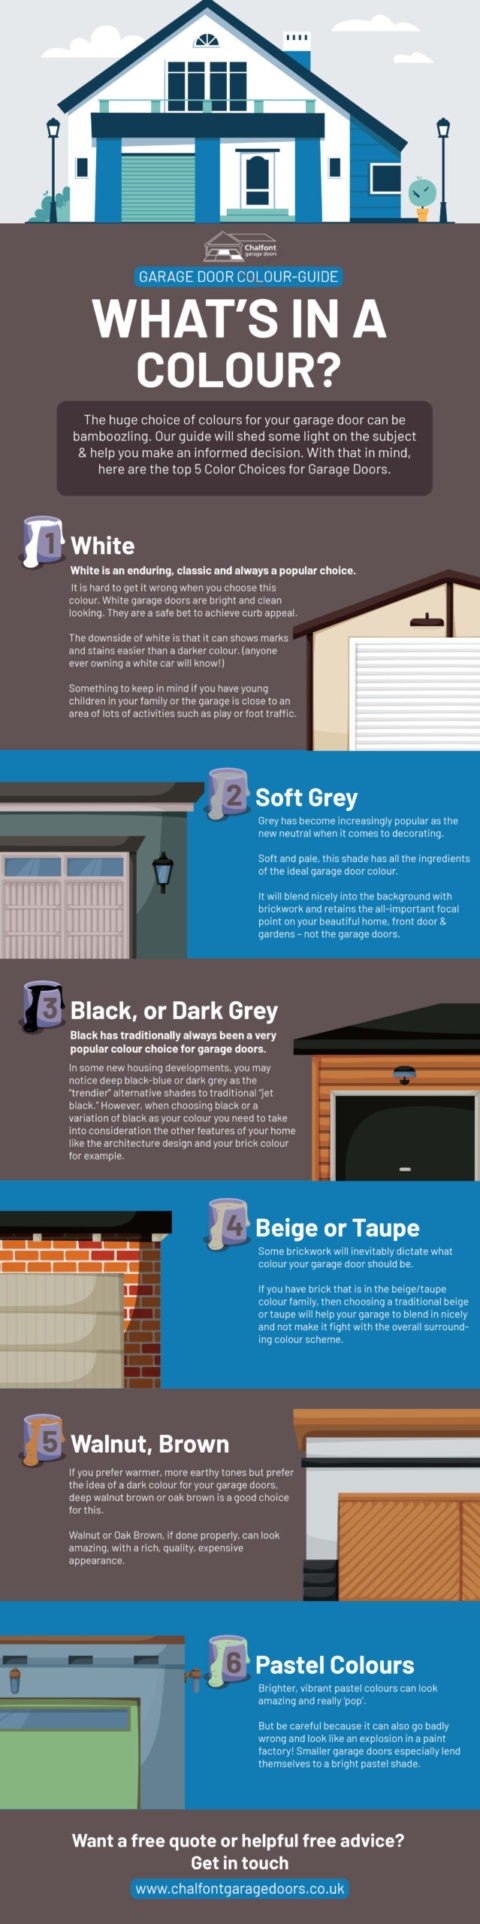 Garage Door Color Guide